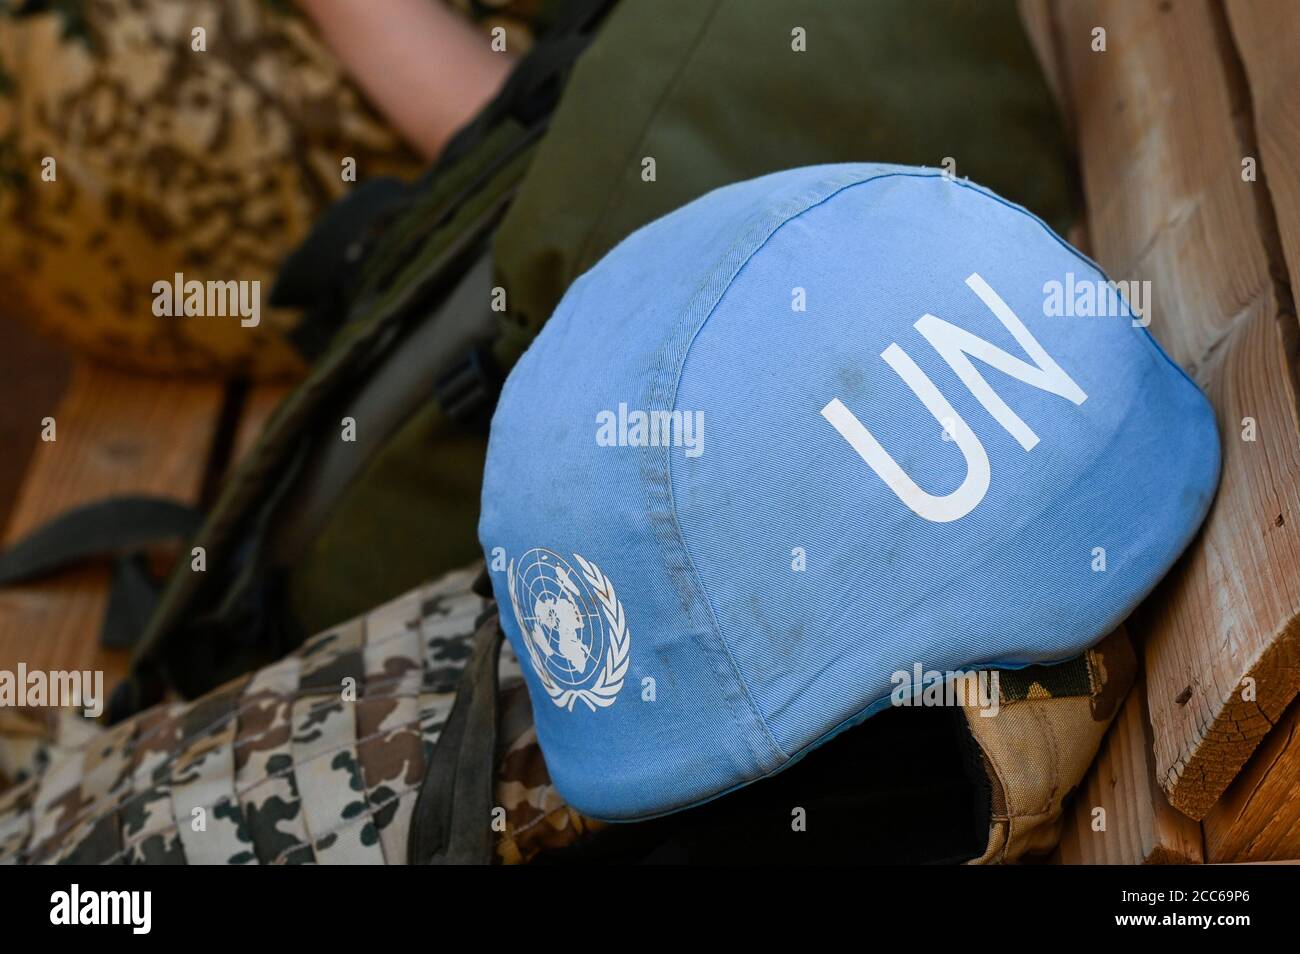 MALI, Gao, Minusma UN-Friedensmission, Camp Castor, bundeswehr, blauer Helm der UN / Blauhelm der UNO Stockfoto